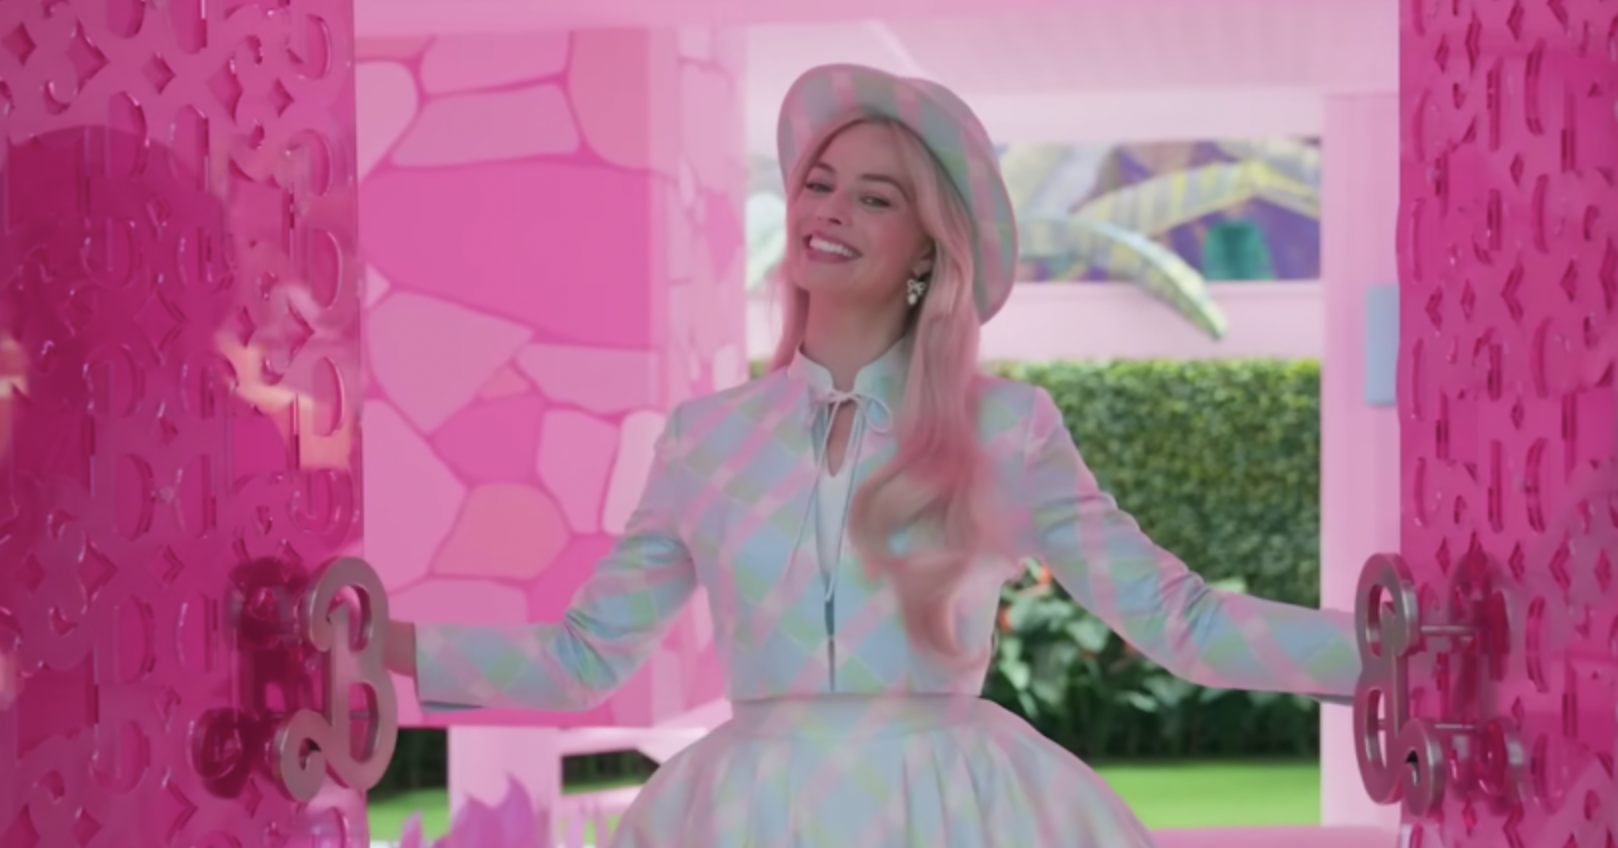 Margot Robbie's bankrekening groeit met Barbie's succes